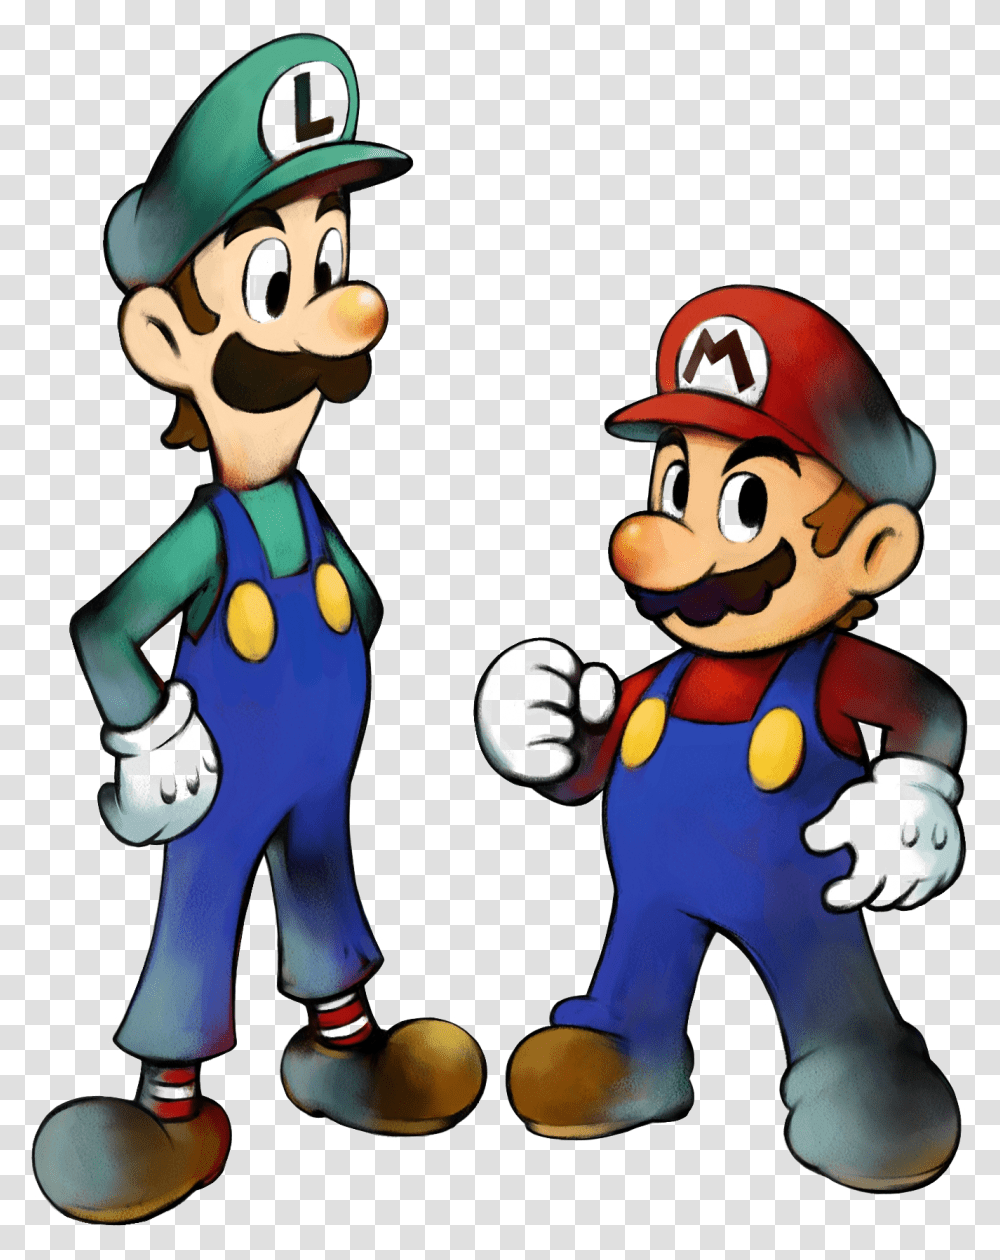 Mario And Luigi Background Image Mario And Luigi Superstar Saga Artwork, Super Mario, Helmet, Apparel Transparent Png